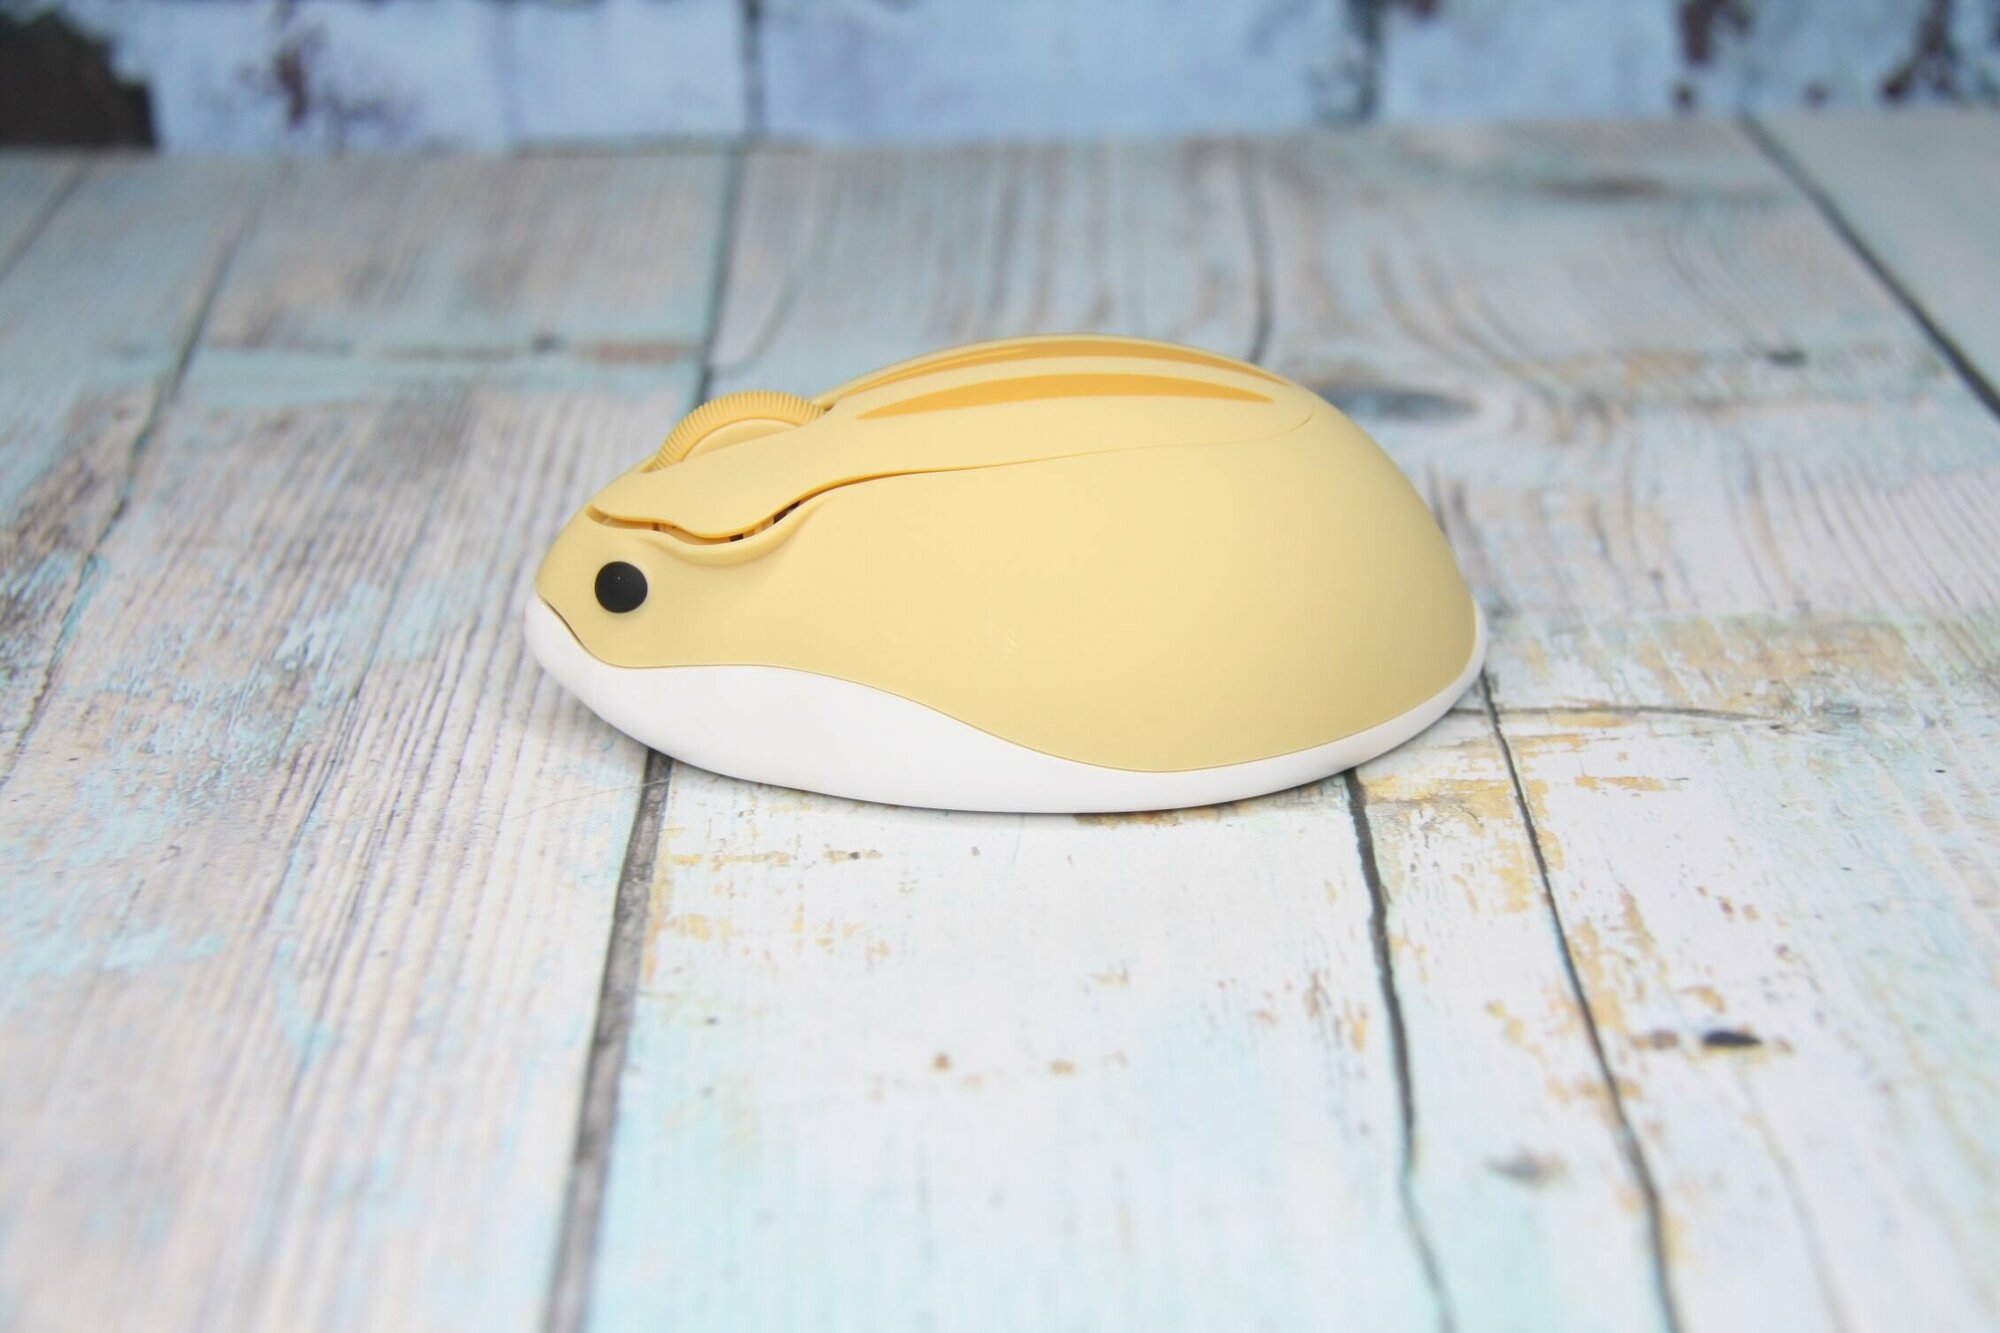 Компьютерная мышь (хомячок) беспроводная оптическая эргономичная CHUYI 24G Мышка с глазами  Желтая